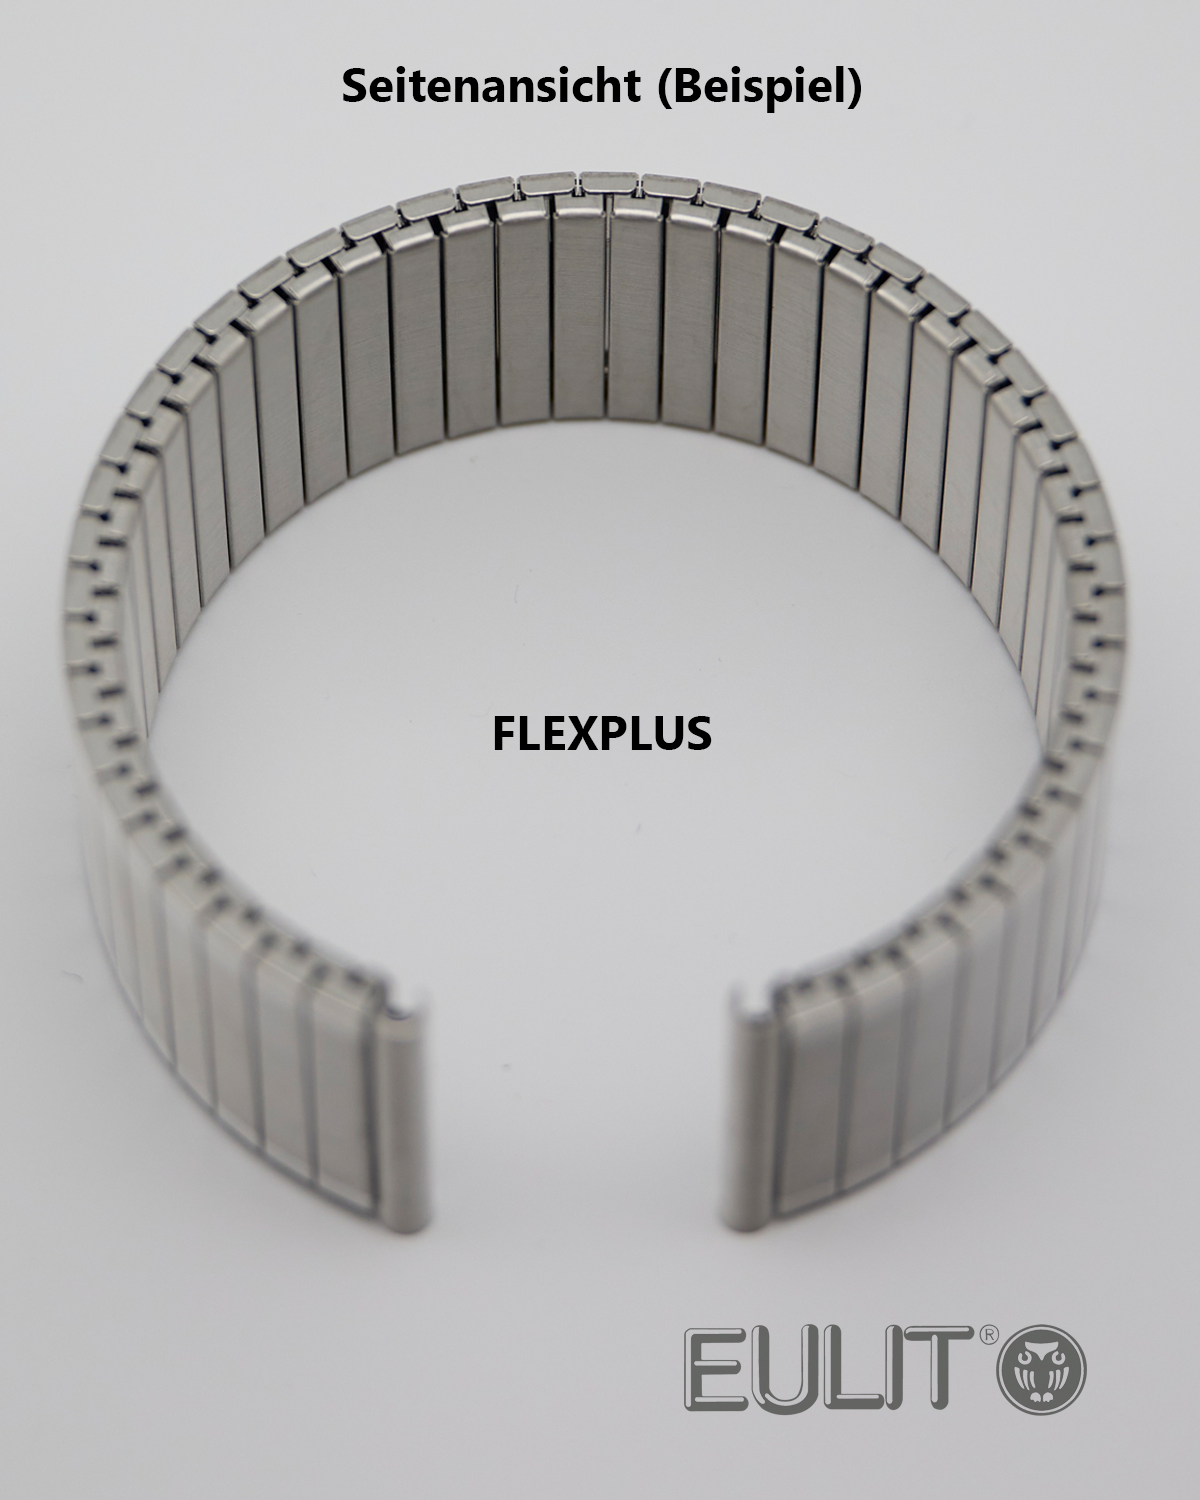 71-3109 EULIT FLEXPLUS 12-14 mm Bicolor